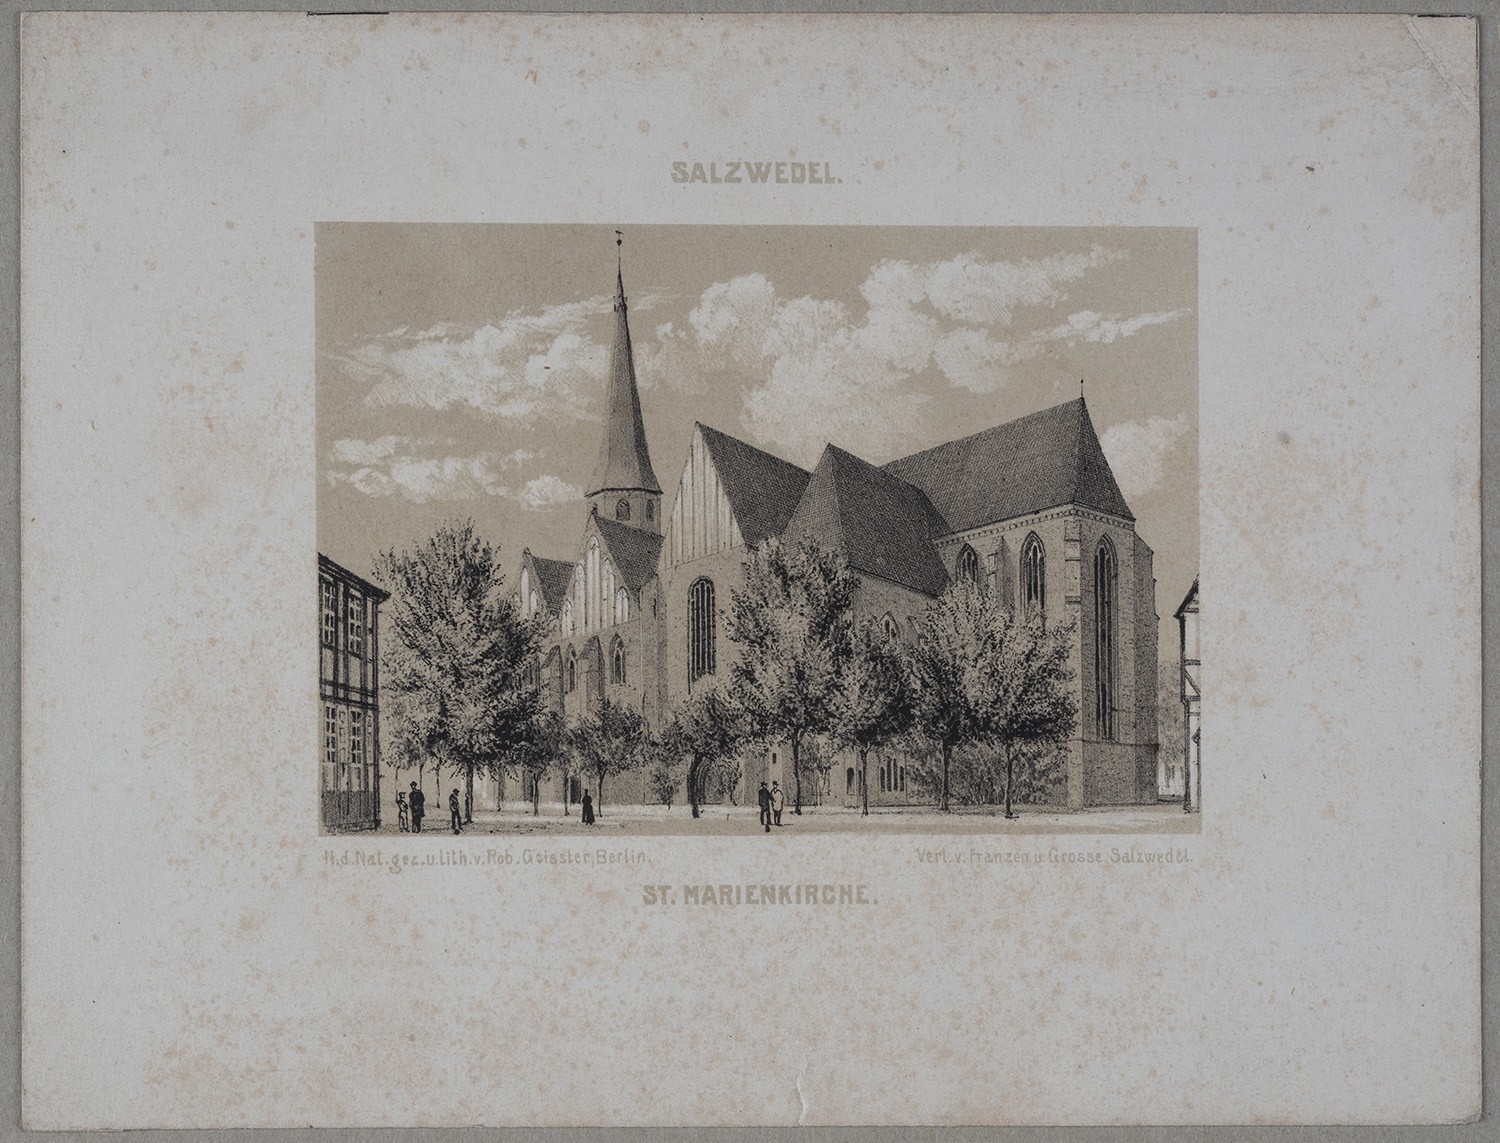 Salzwedel: Marienkirche (Landesgeschichtliche Vereinigung für die Mark Brandenburg e.V., Archiv CC BY)